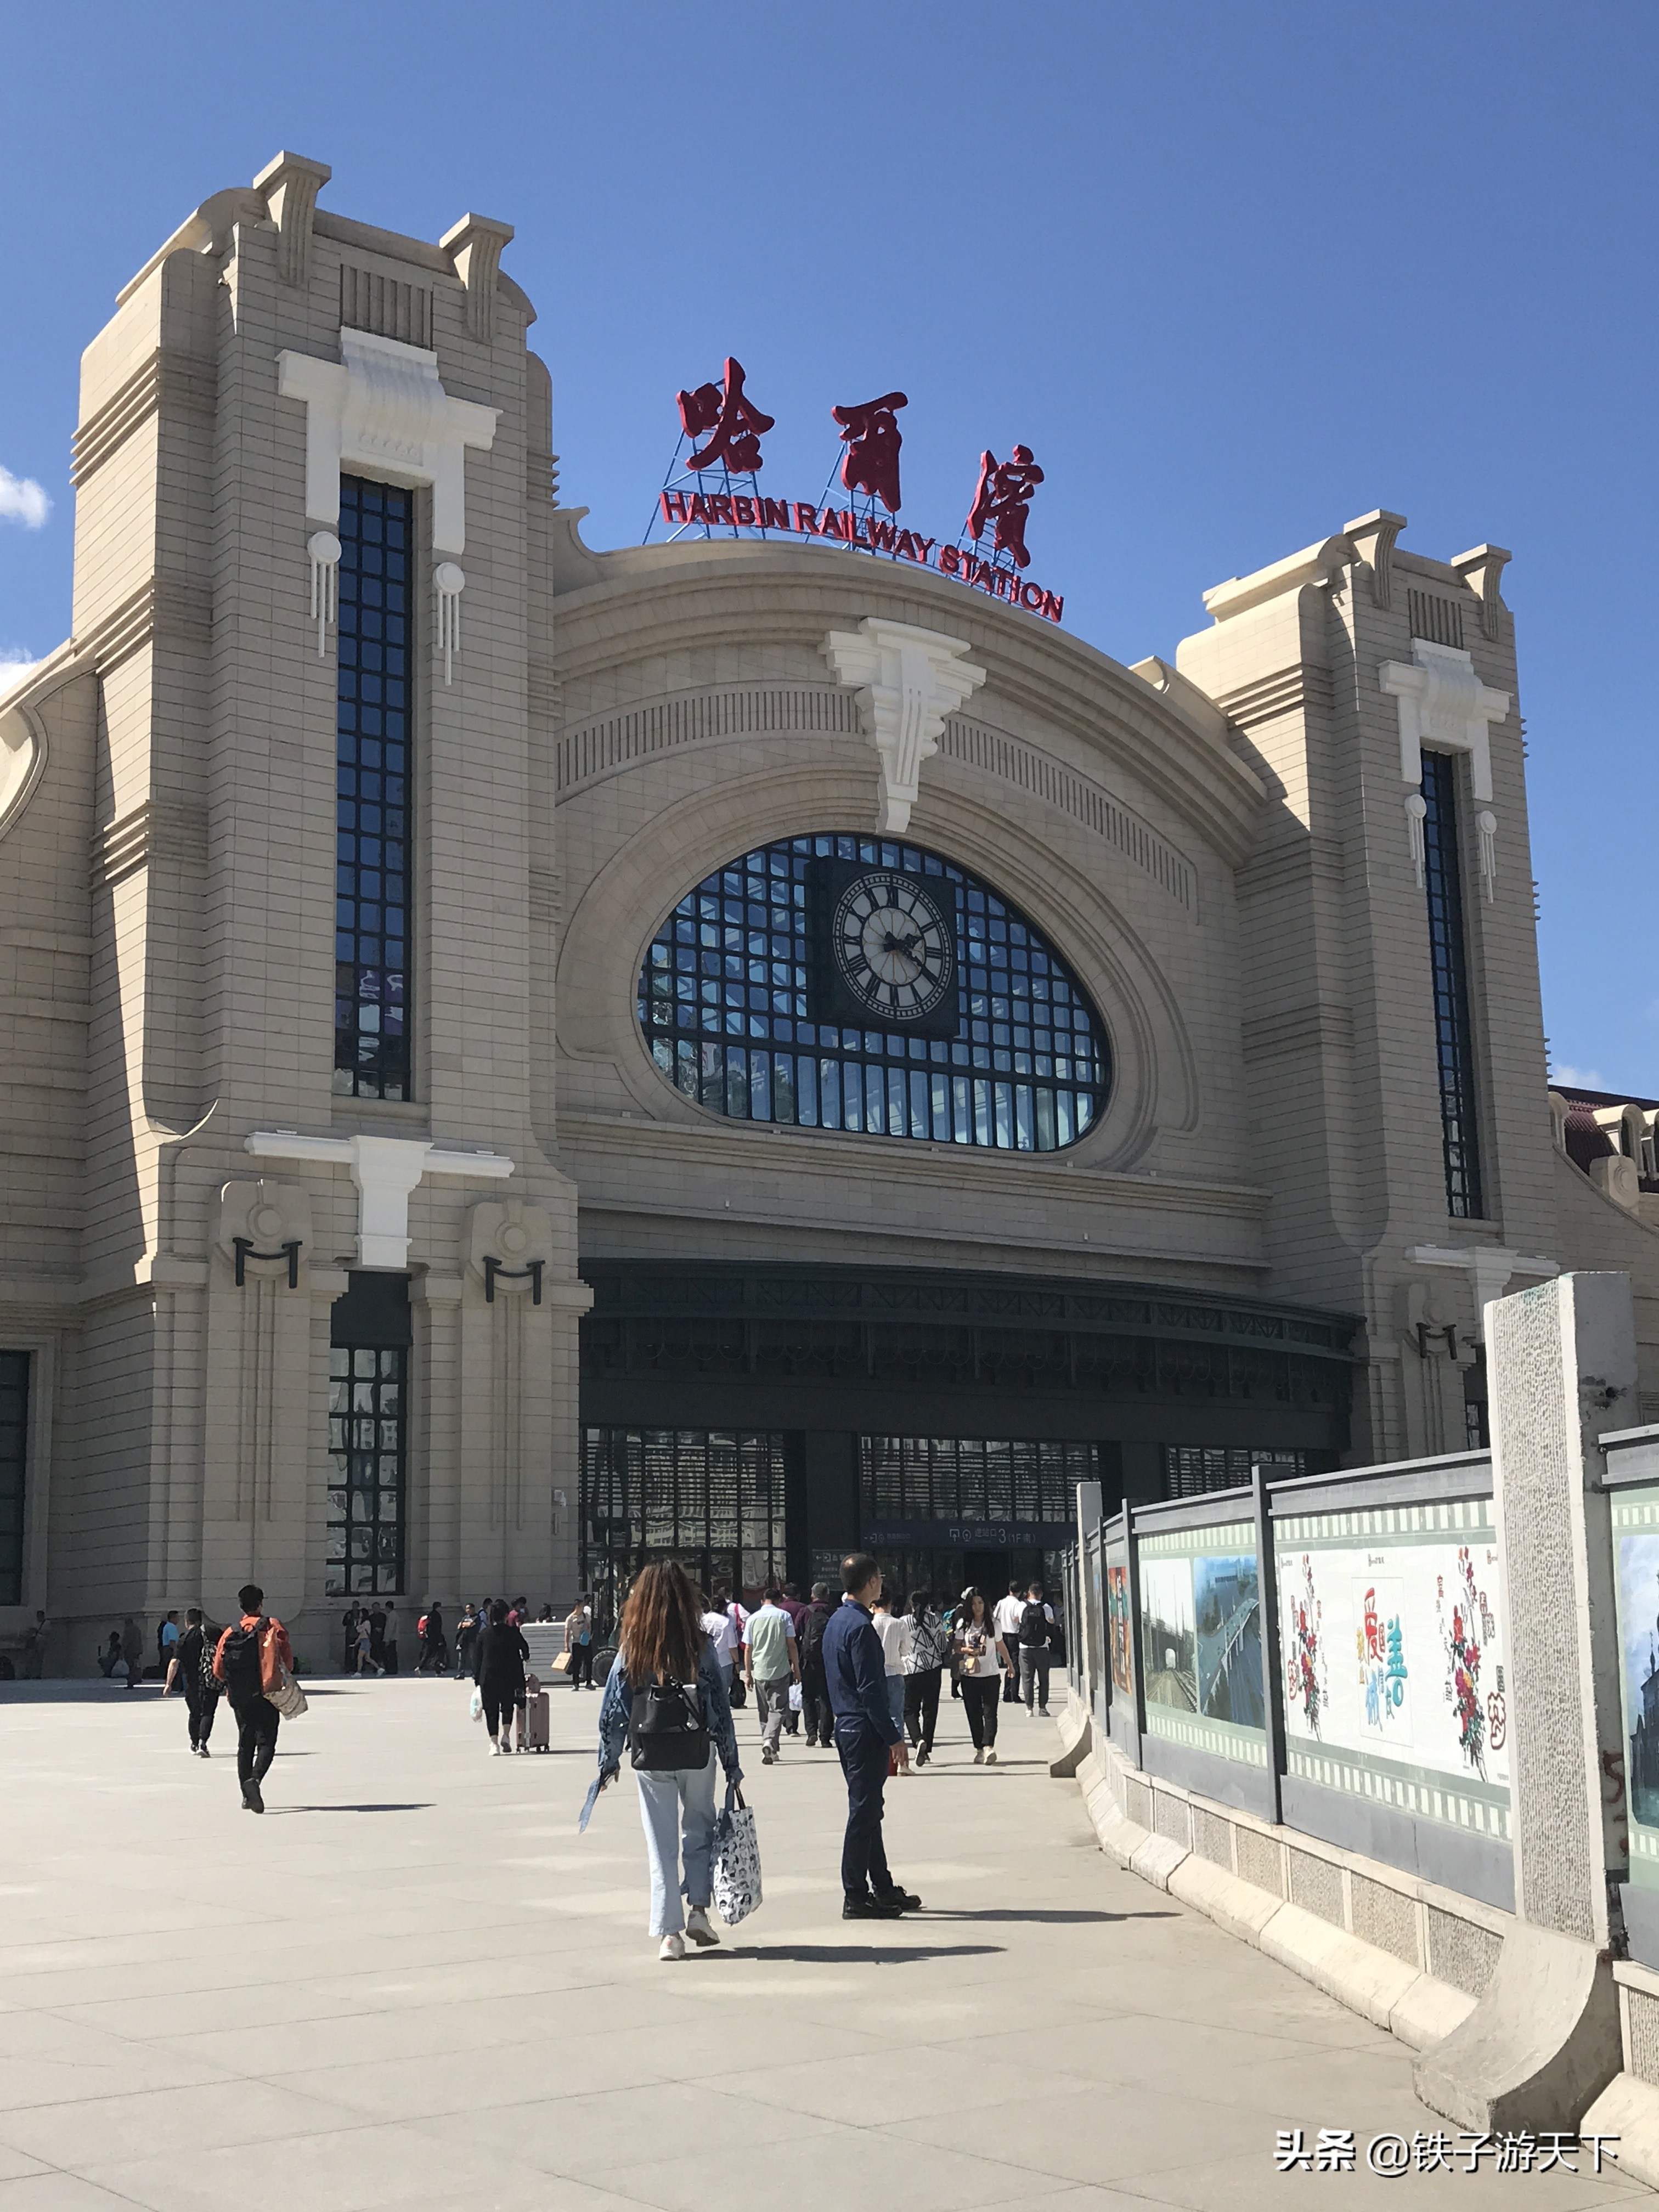 哈尔滨火车站南广场,工程正在收尾